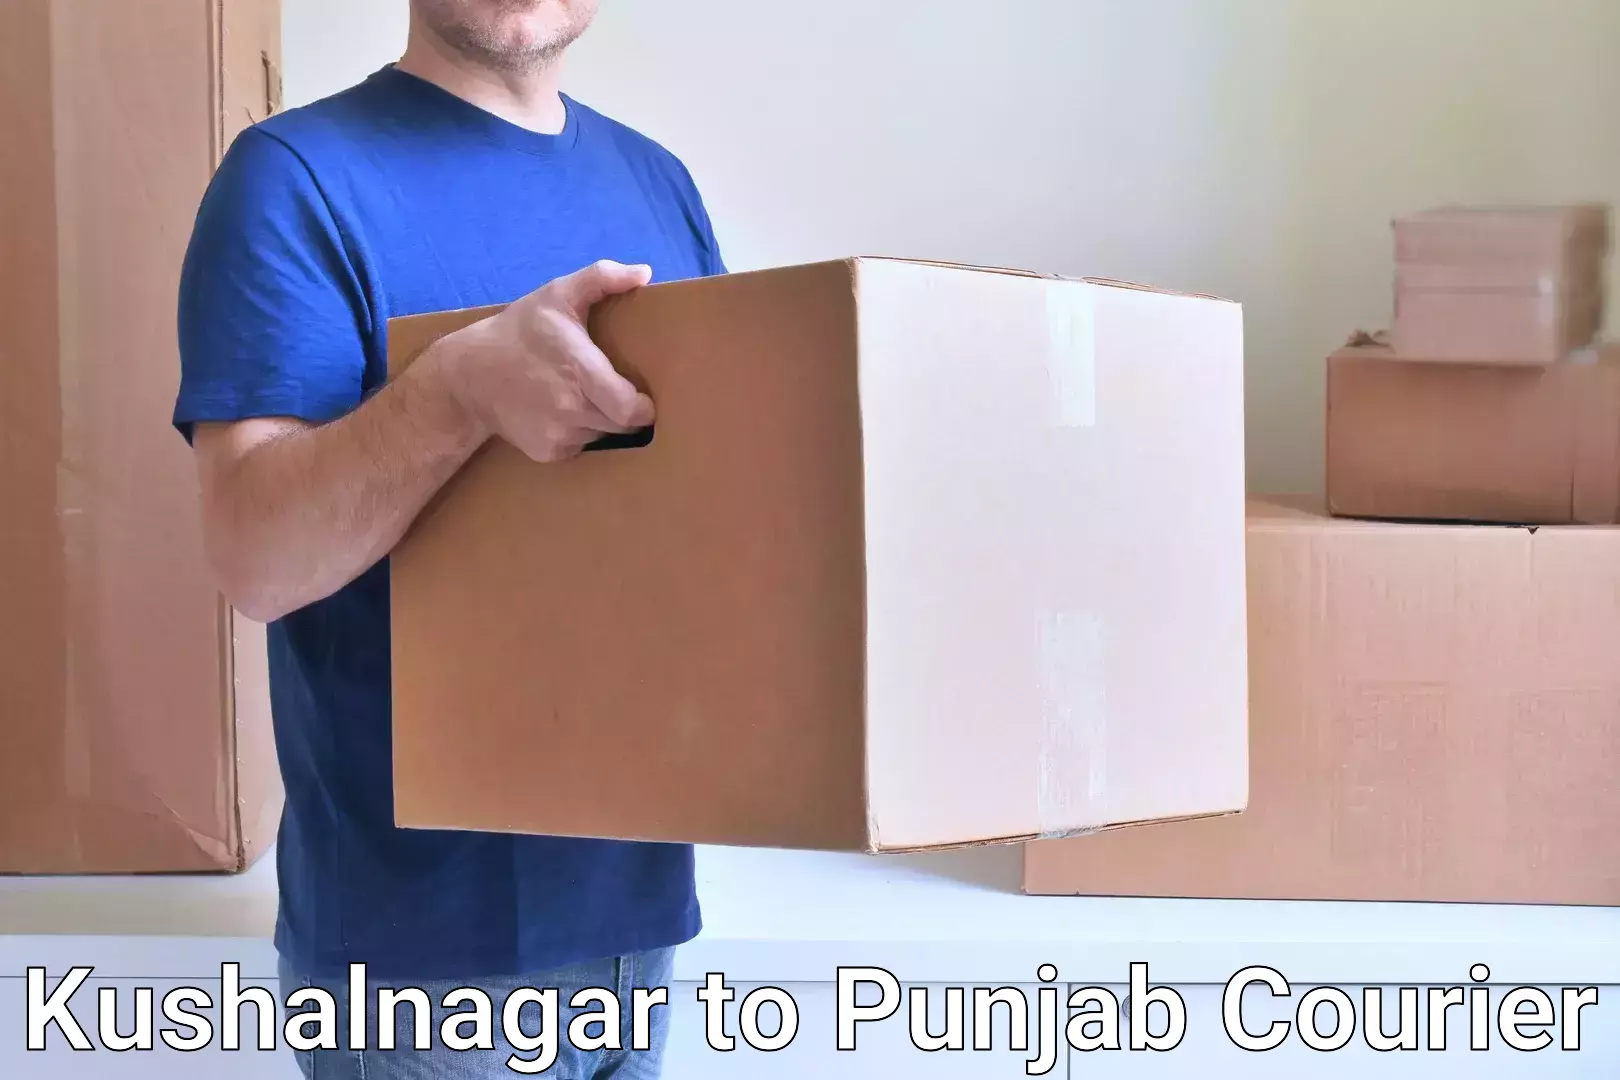 Personal courier services Kushalnagar to Sirhind Fatehgarh